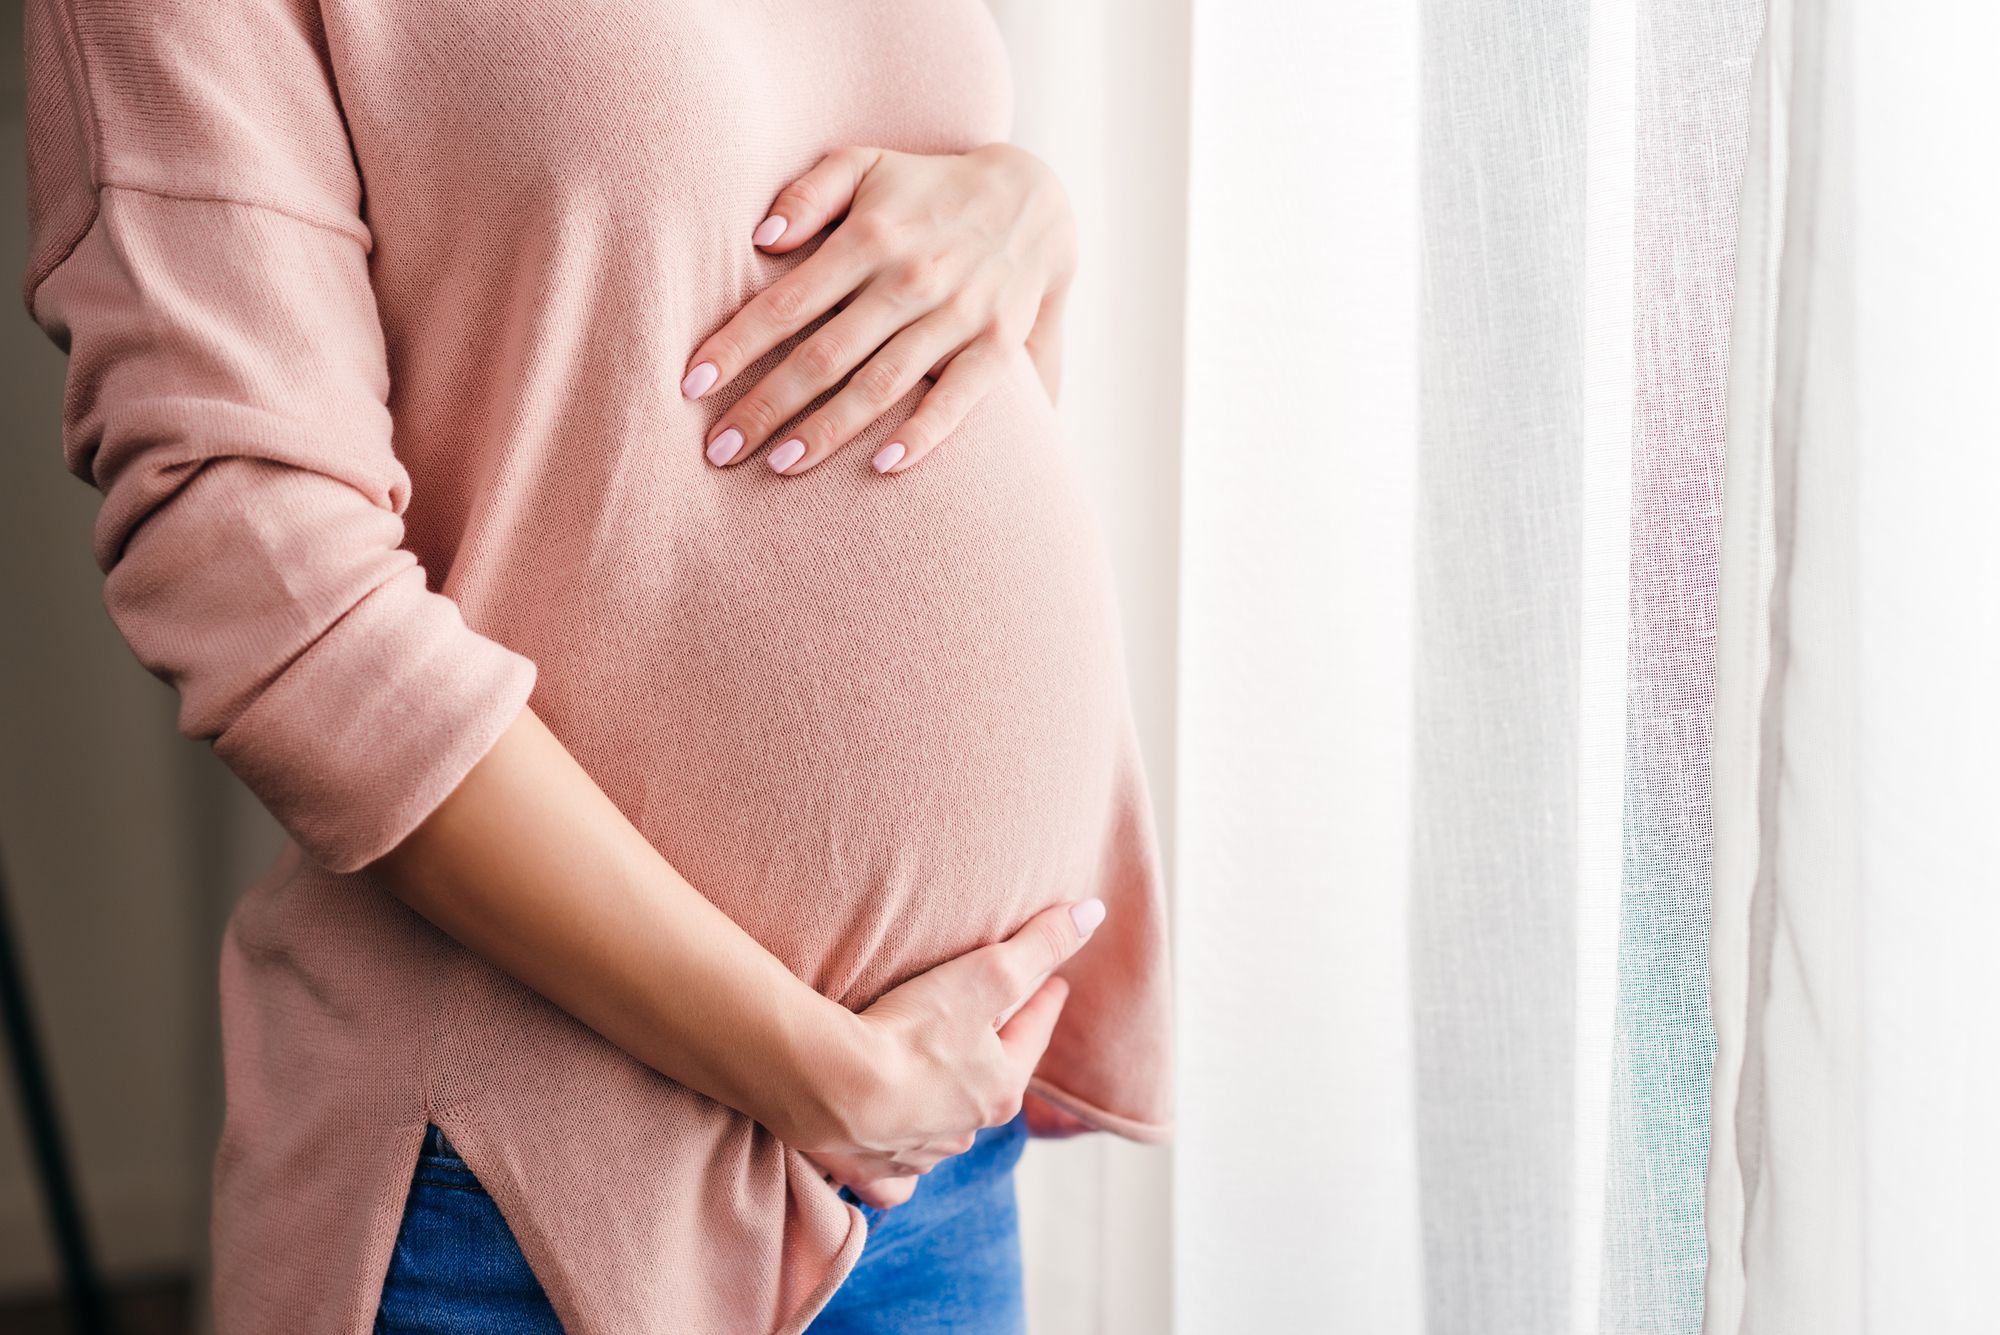 استخدام وتأثير الشامبو في الحمل والرضاعة الطبيعية